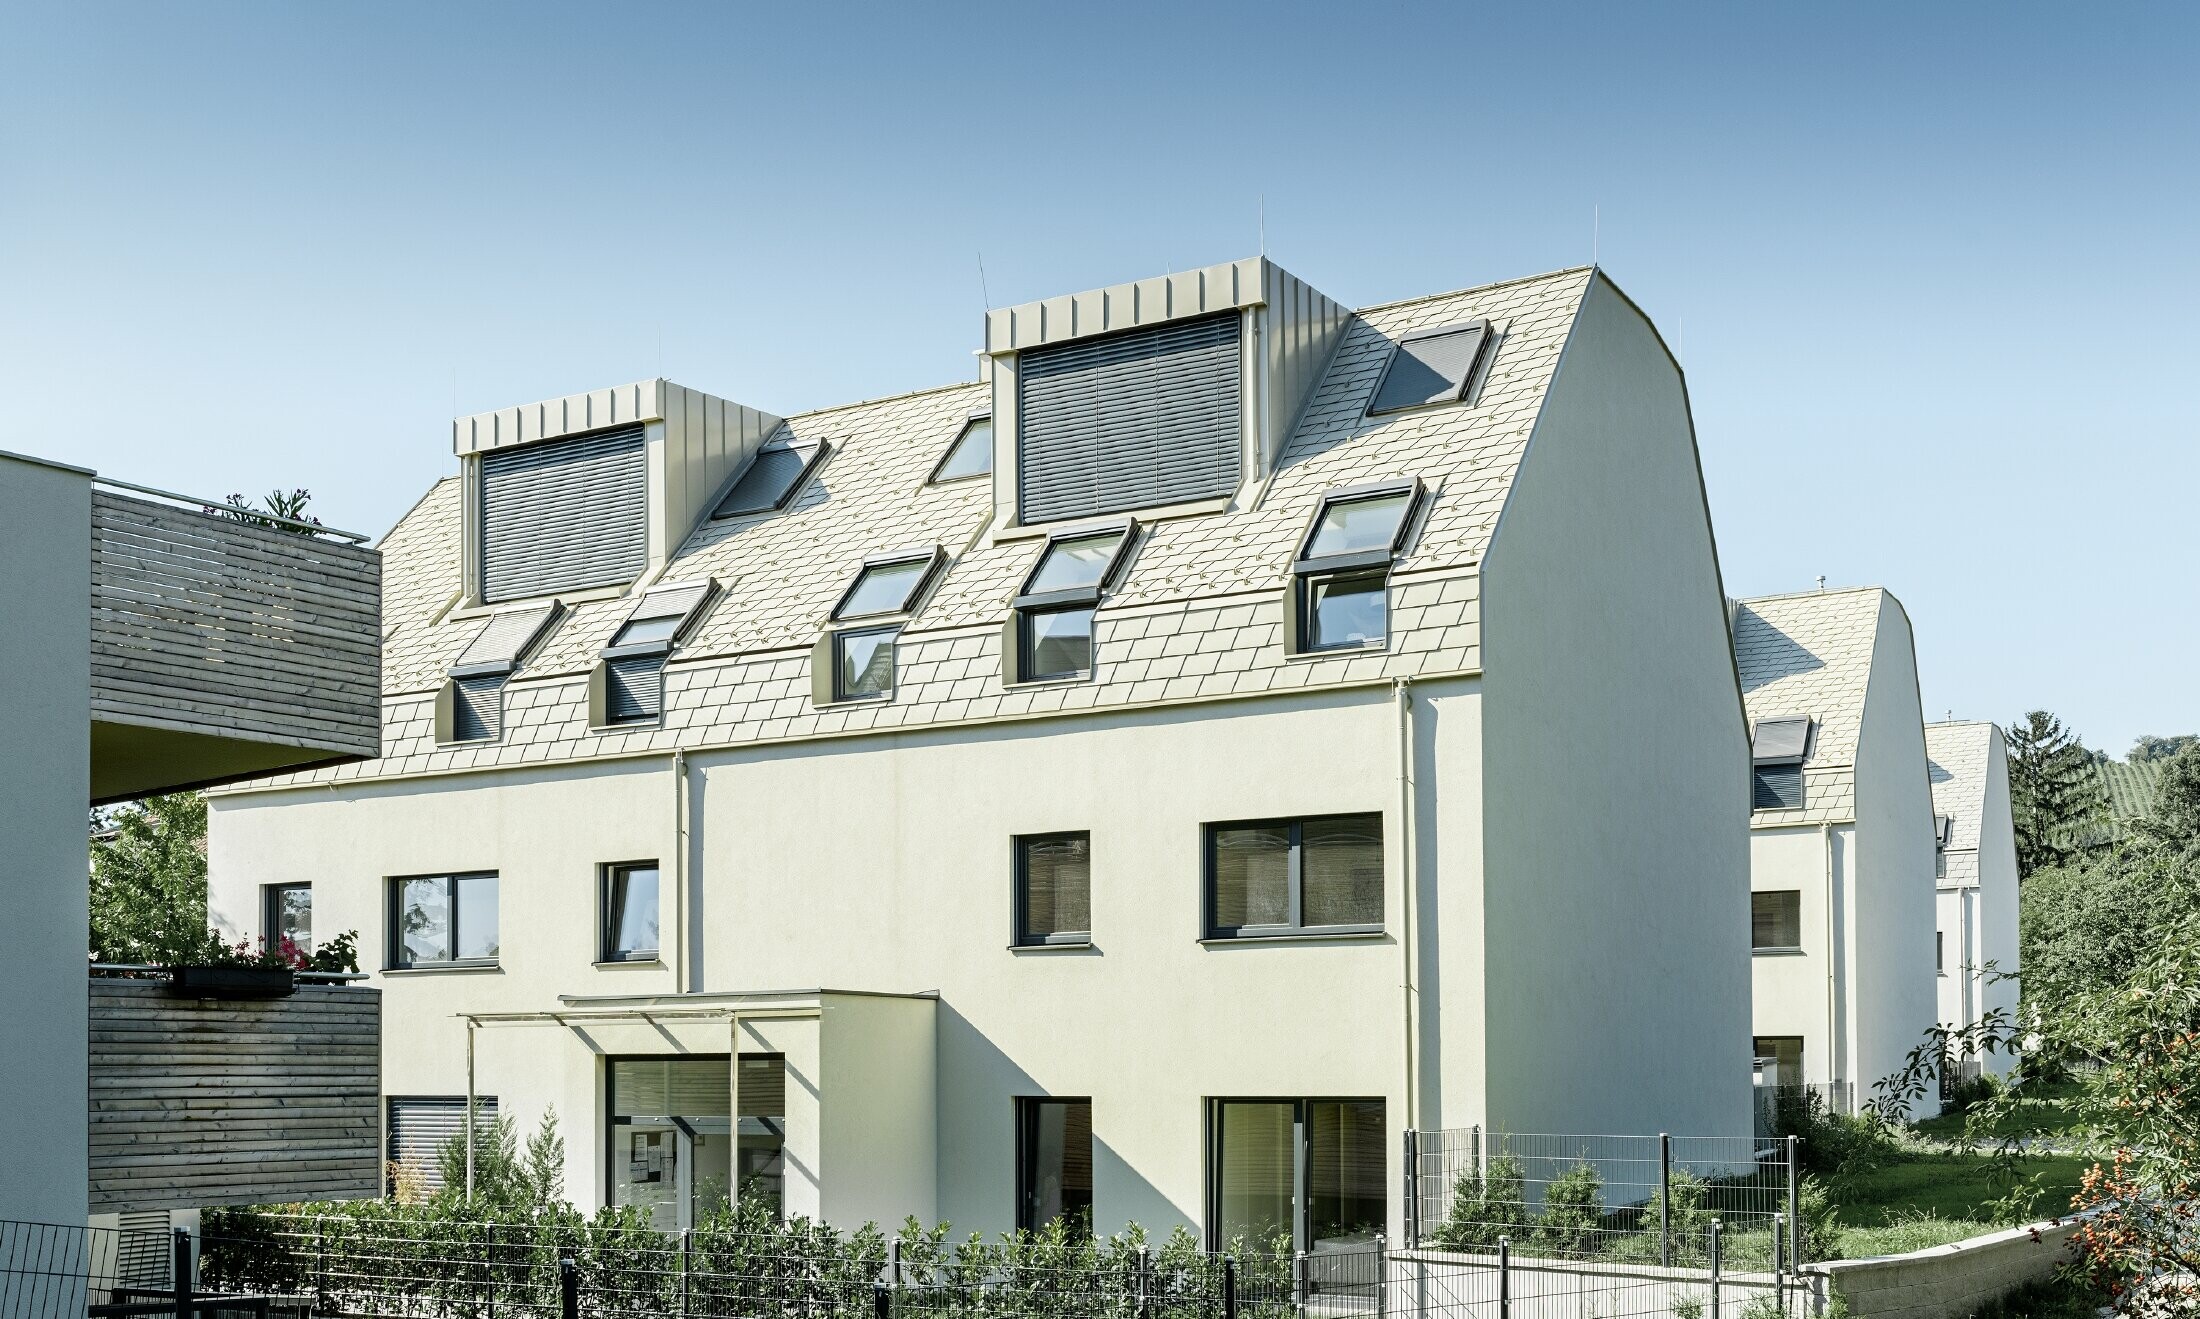 Nowe osiedle mieszkaniowe z dużymi powierzchniami dachowymi pokrytymi aluminium i wieloma oknami połaciowymi